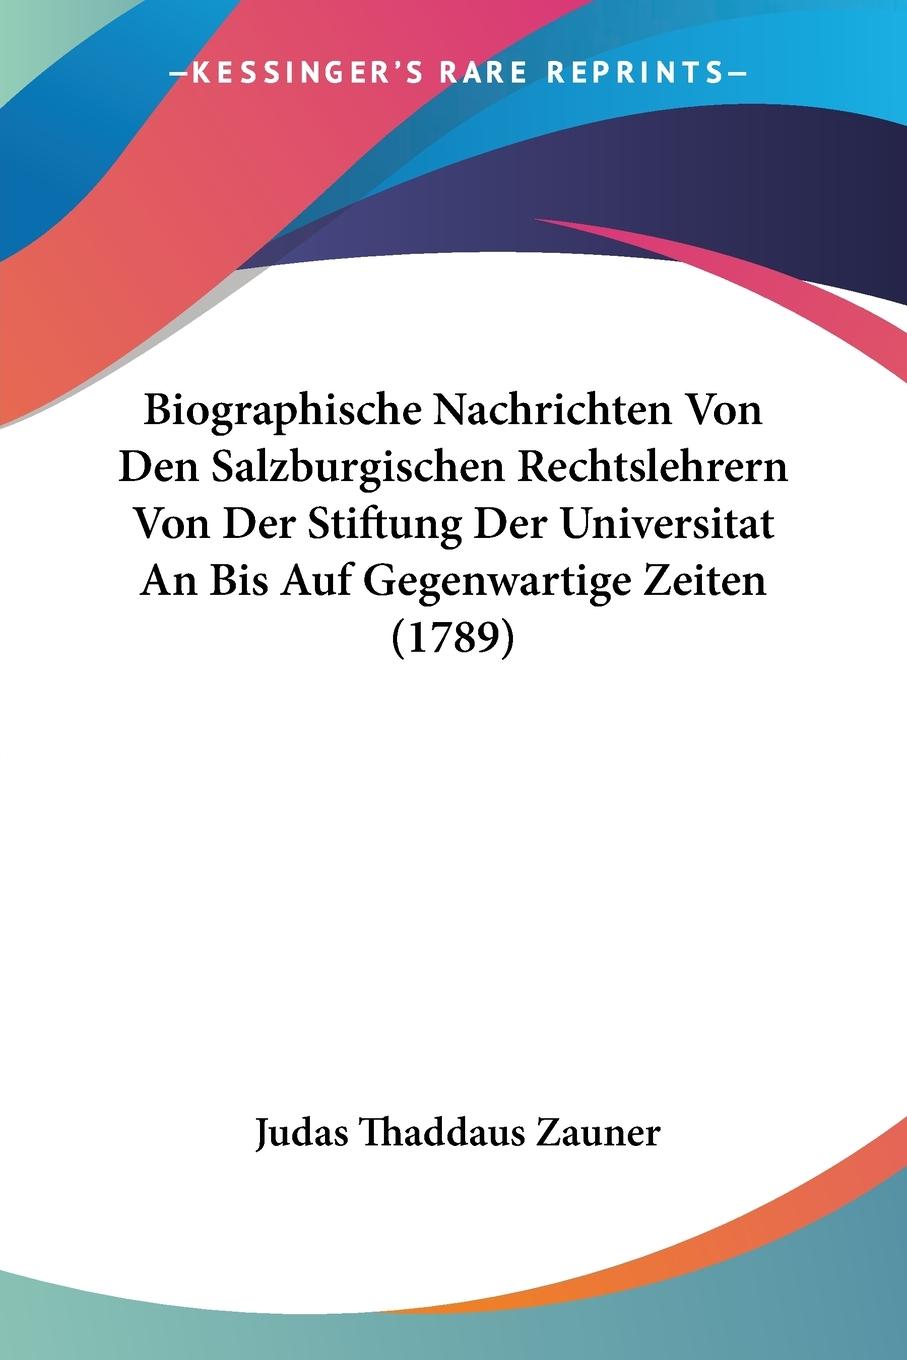 Biographische Nachrichten Von Den Salzburgischen Rechtslehrern Von Der Stiftung Der Universitat An Bis Auf Gegenwartige Zeiten (1789) - Zauner, Judas Thaddaus